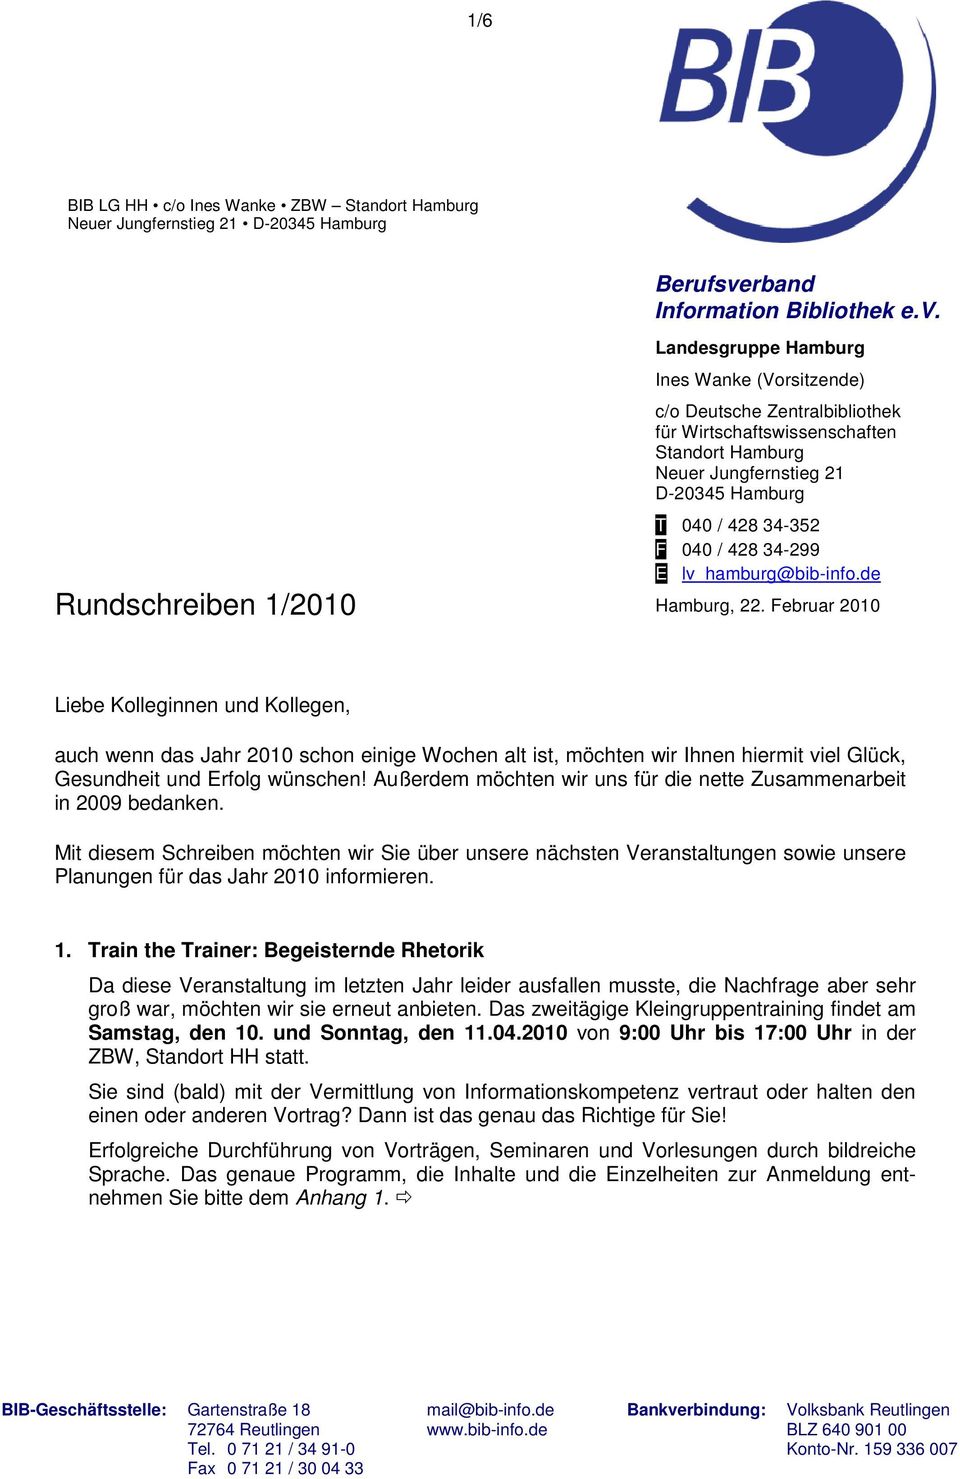 Rundschreiben 1/2010 Landesgruppe Hamburg Ines Wanke (Vorsitzende) c/o Deutsche Zentralbibliothek für Wirtschaftswissenschaften Standort Hamburg D-20345 Hamburg T 040 / 428 34-352 F 040 / 428 34-299